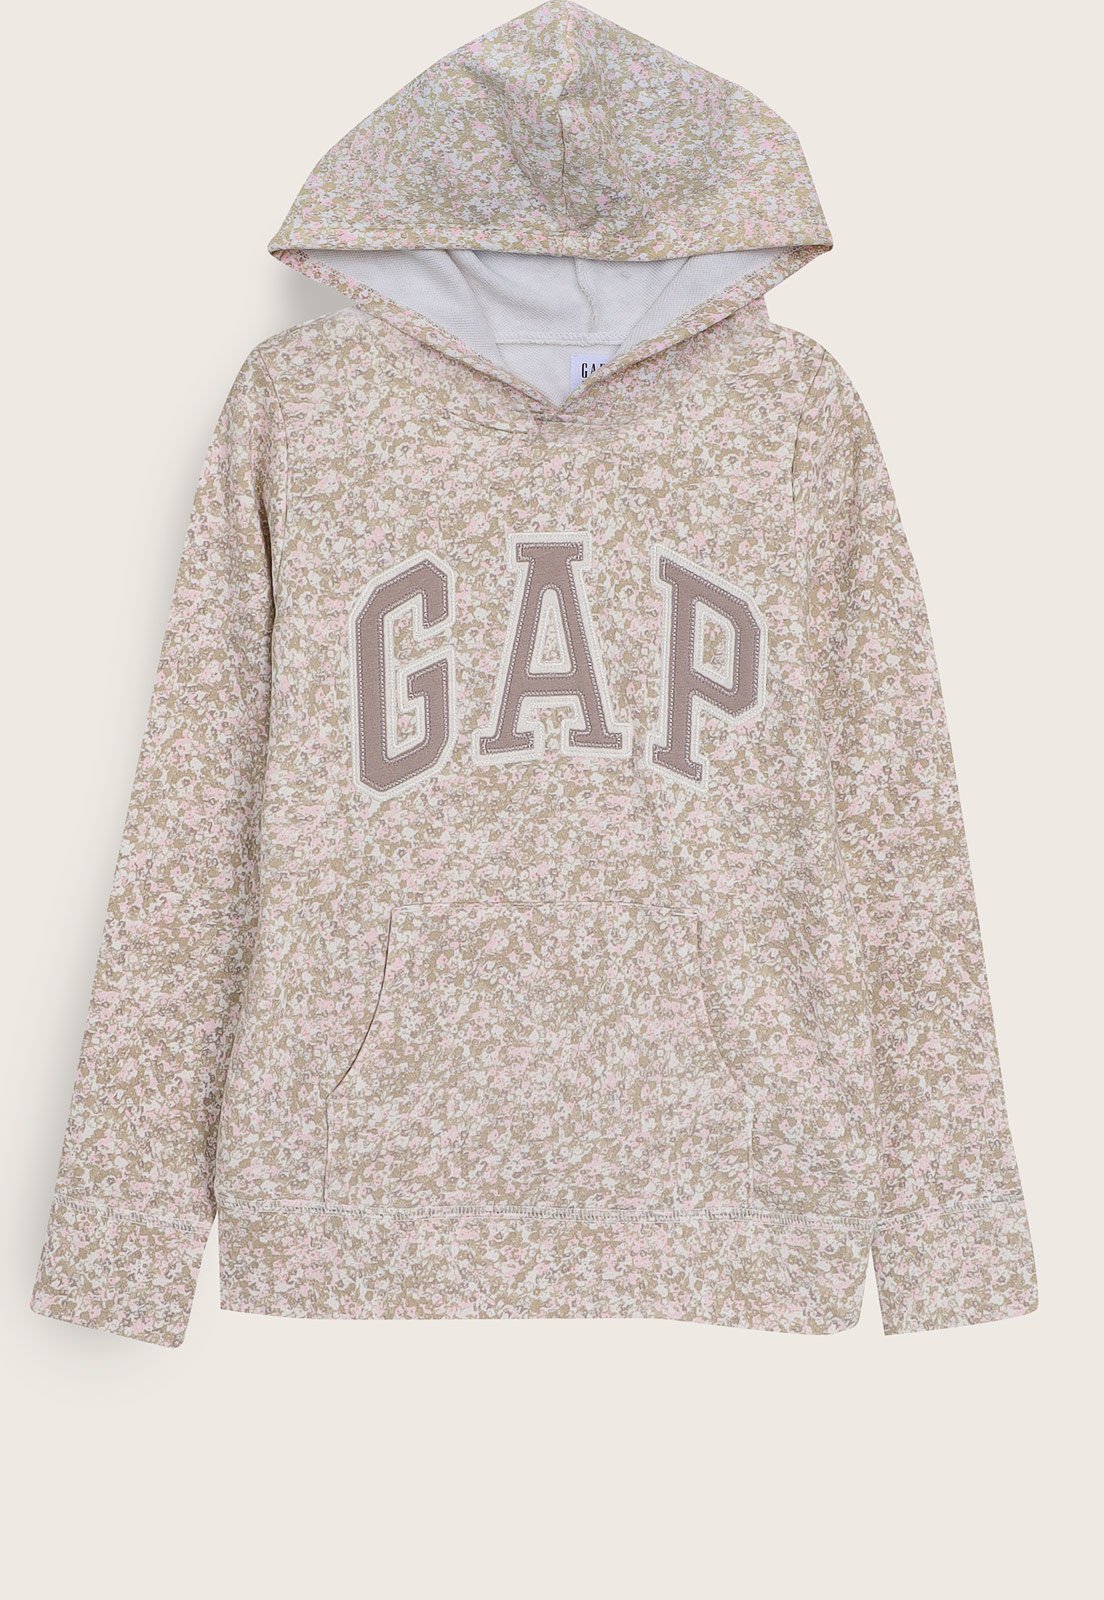 Blusa Gap Kids Estampada - Flor / Floral - Infantil, Roupa Infantil para  Menina Gap Usado 92361896